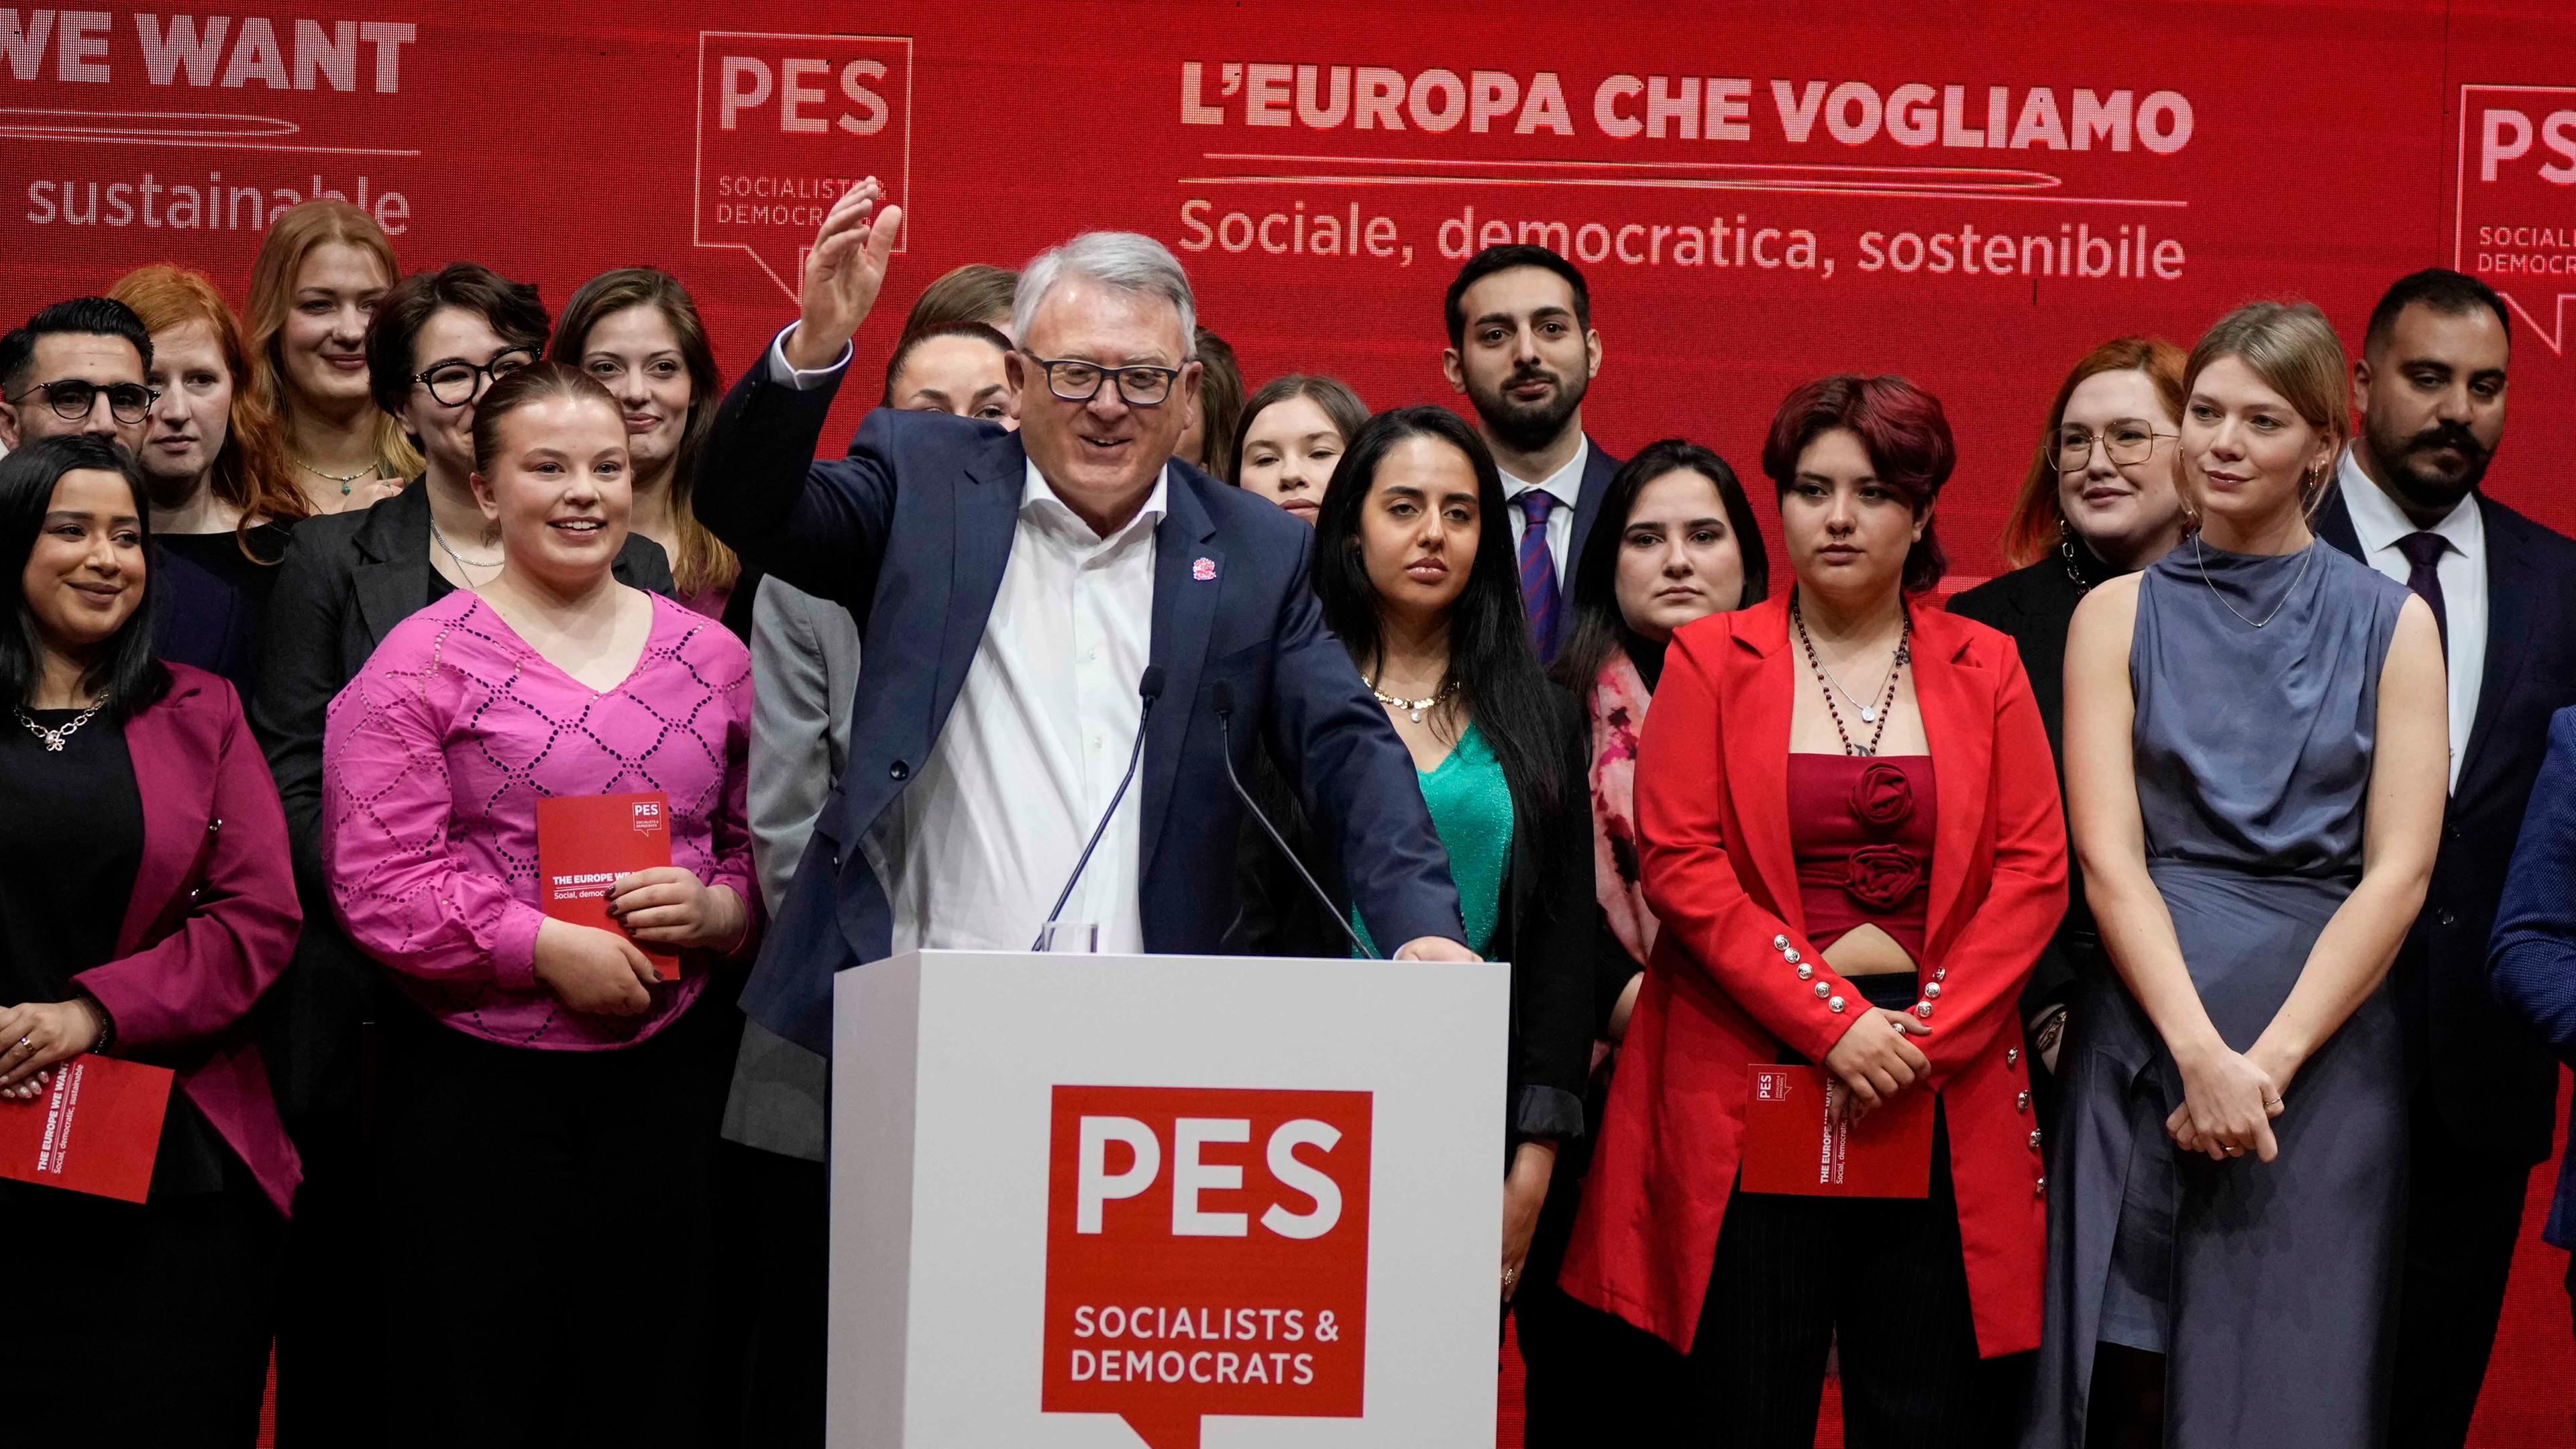 Nicolas Schmit (Mitte), EU-Kommissar für Beschäftigung und soziale Rechte und Kandidat der Sozialdemokratischen Partei Europas 